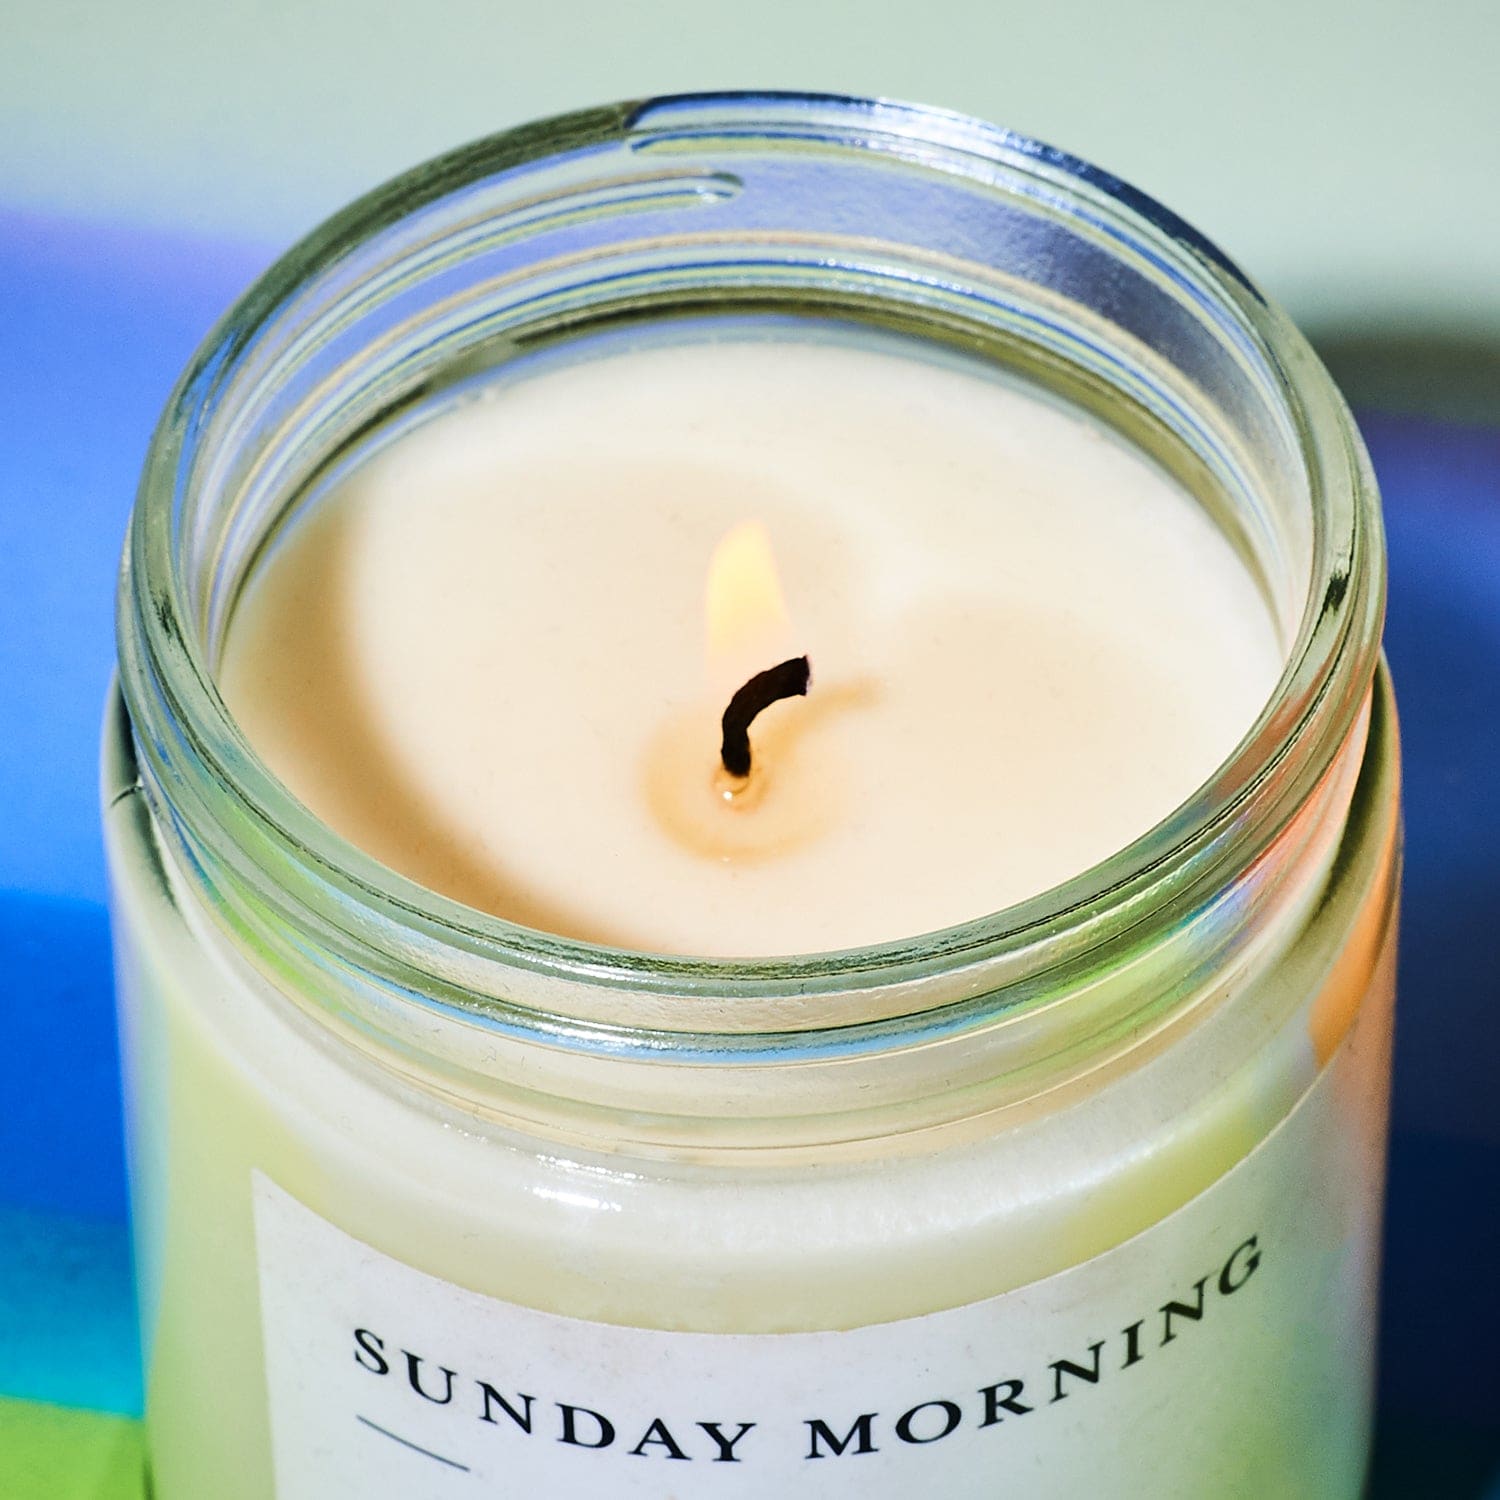 Minimalist Jar Candle 8 Oz. Sunday Morning 1022 - Candle - 